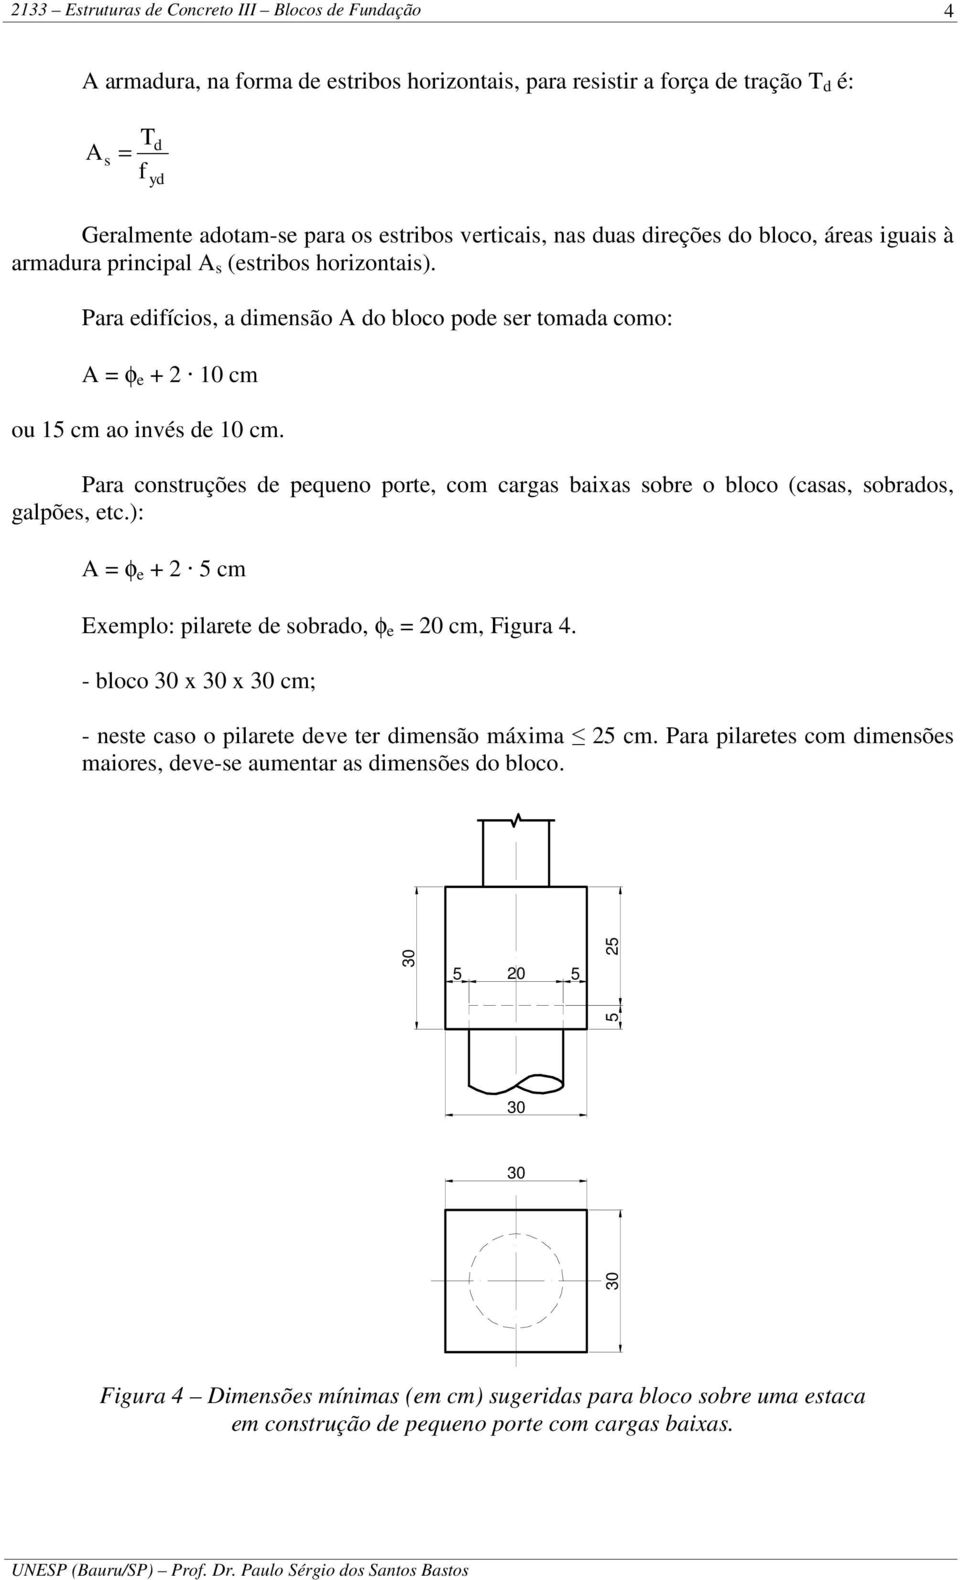 Para construçõs pquno port, com cargas baixas sobr o bloco (casas, sobraos, galpõs, tc.): φ + 5 cm Exmplo: pilart sobrao, φ 0 cm, Figura 4.